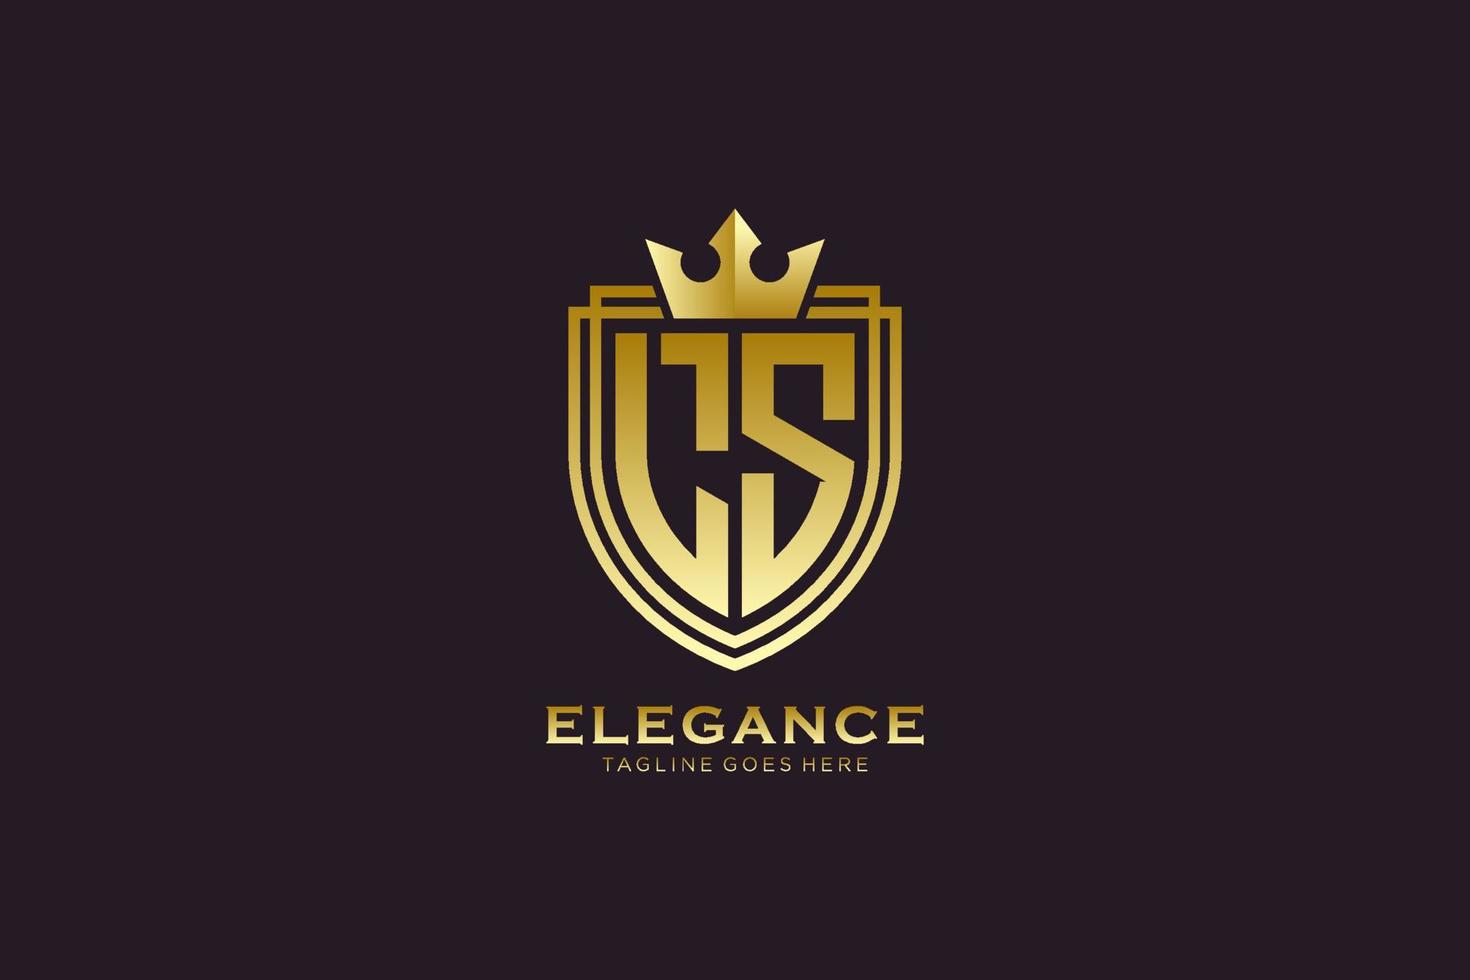 logotipo de monograma de lujo inicial ls elegante o plantilla de placa con pergaminos y corona real - perfecto para proyectos de marca de lujo vector